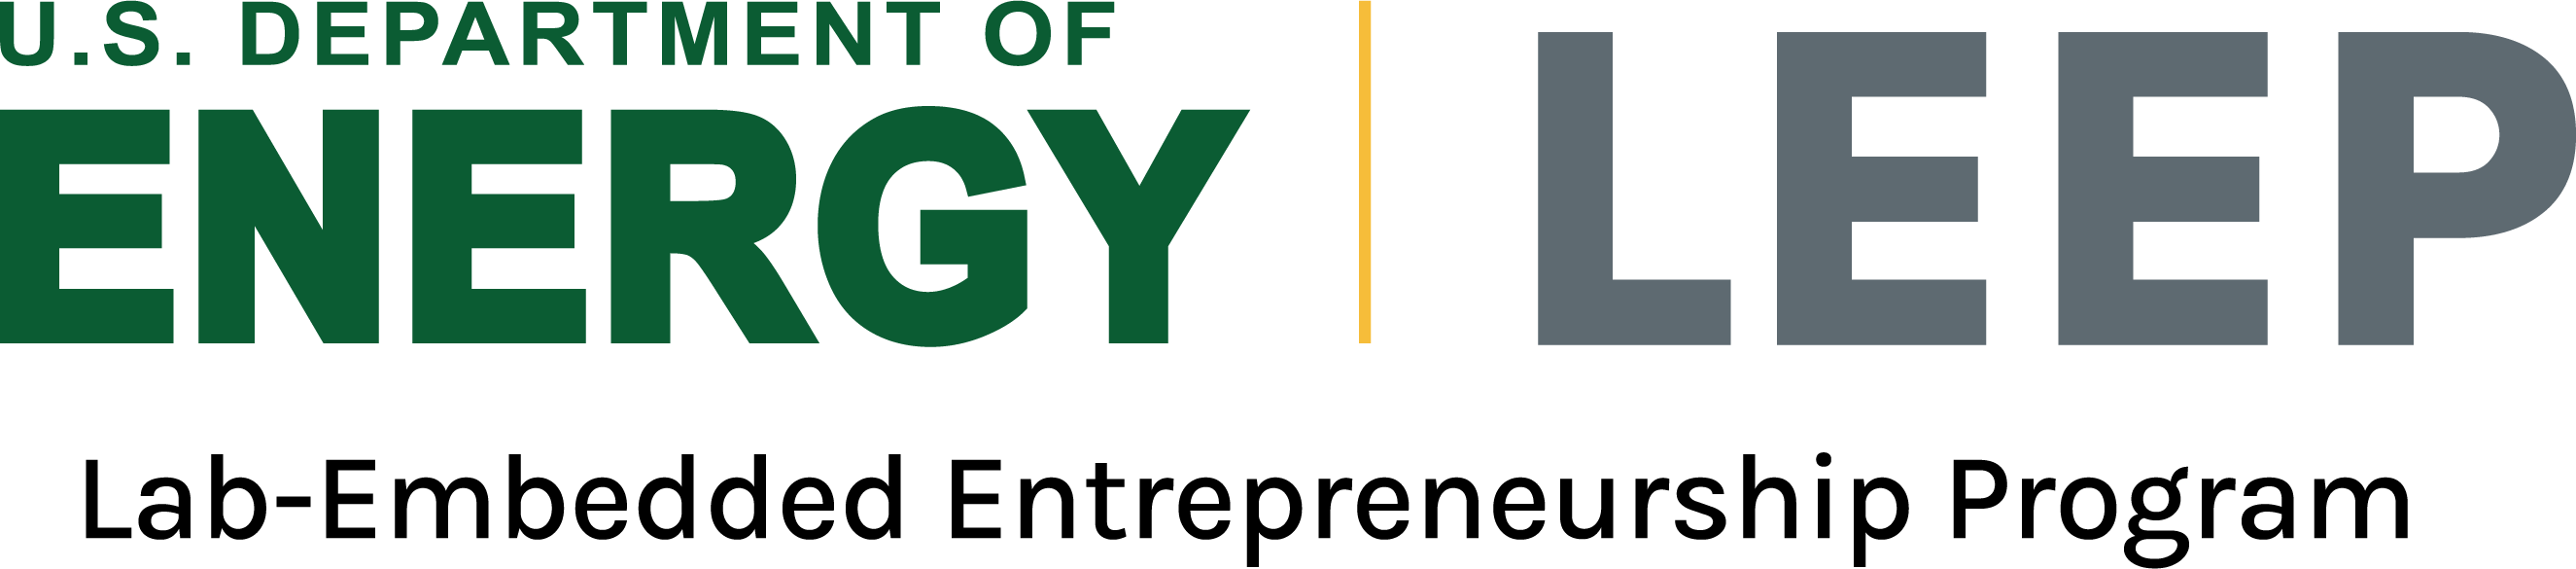 Department of Energy Lab-Embedded Entrepreneurship Program (LEEP) logo